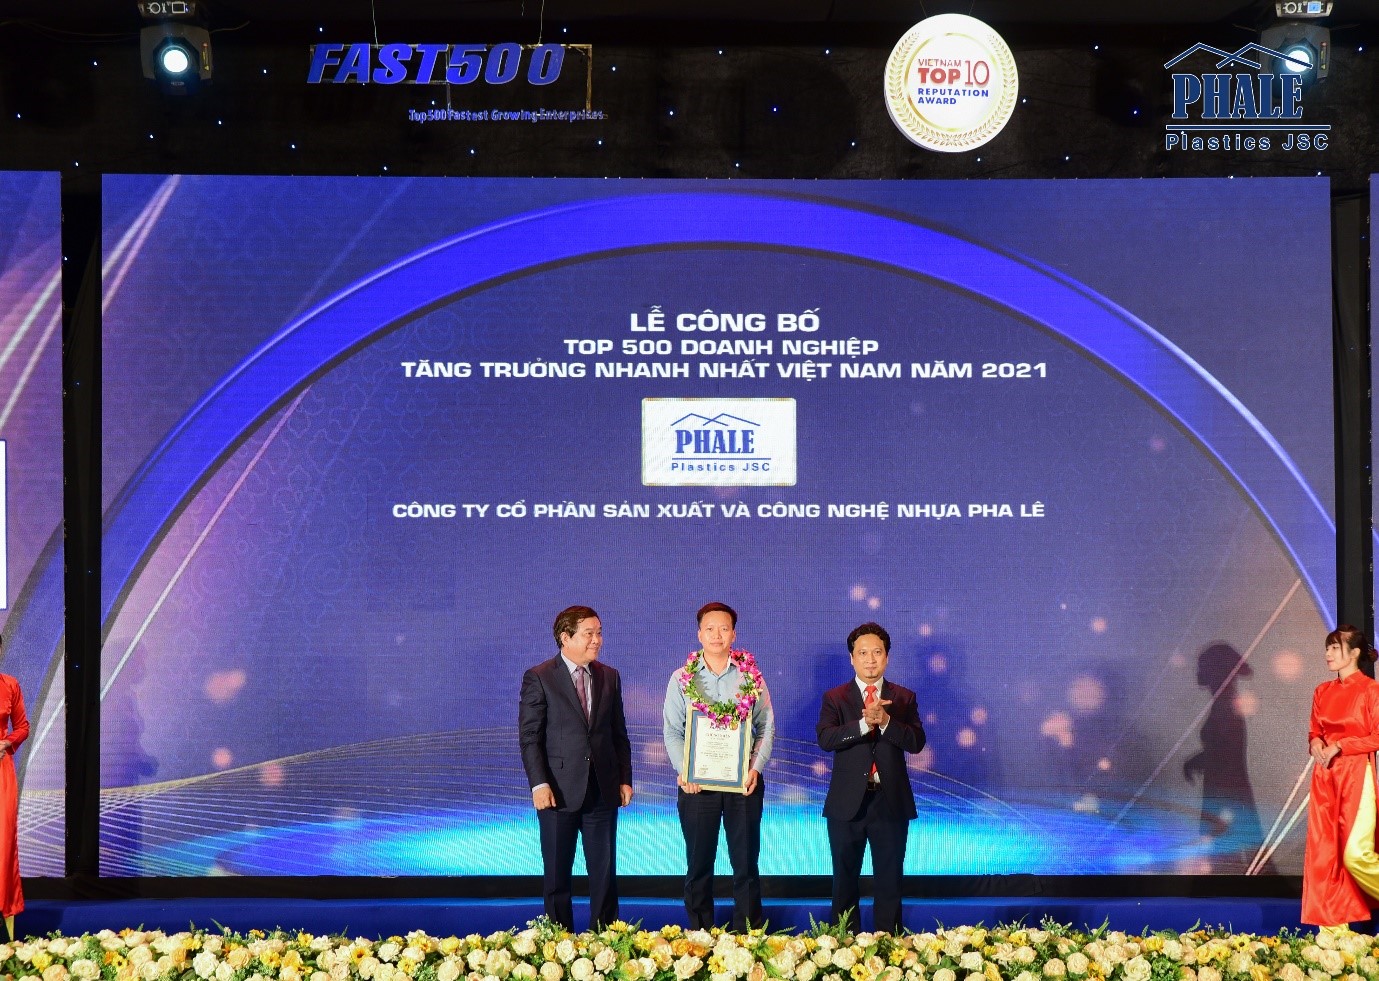 Nhựa Pha Lê đạt TOP 10 Doanh nghiệp Tăng trưởng nhanh nhất Việt Nam